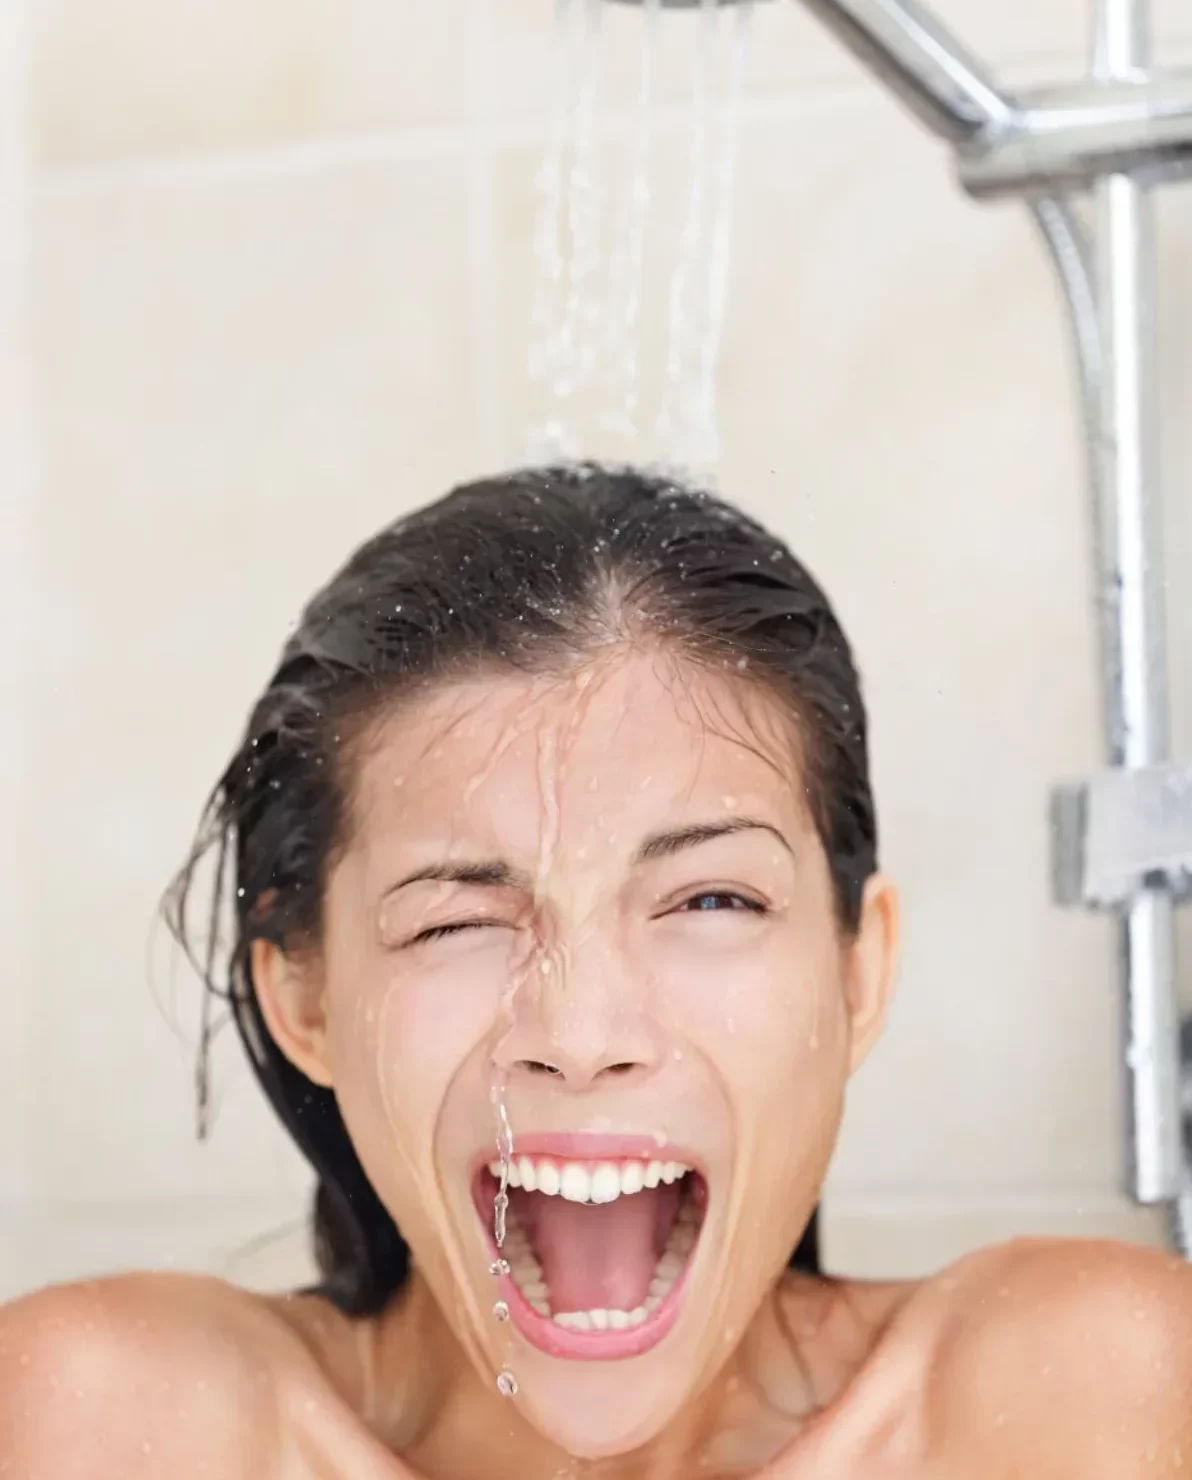 les bienfaits de la douche froide selon la science quand et comment prendre une douche froide